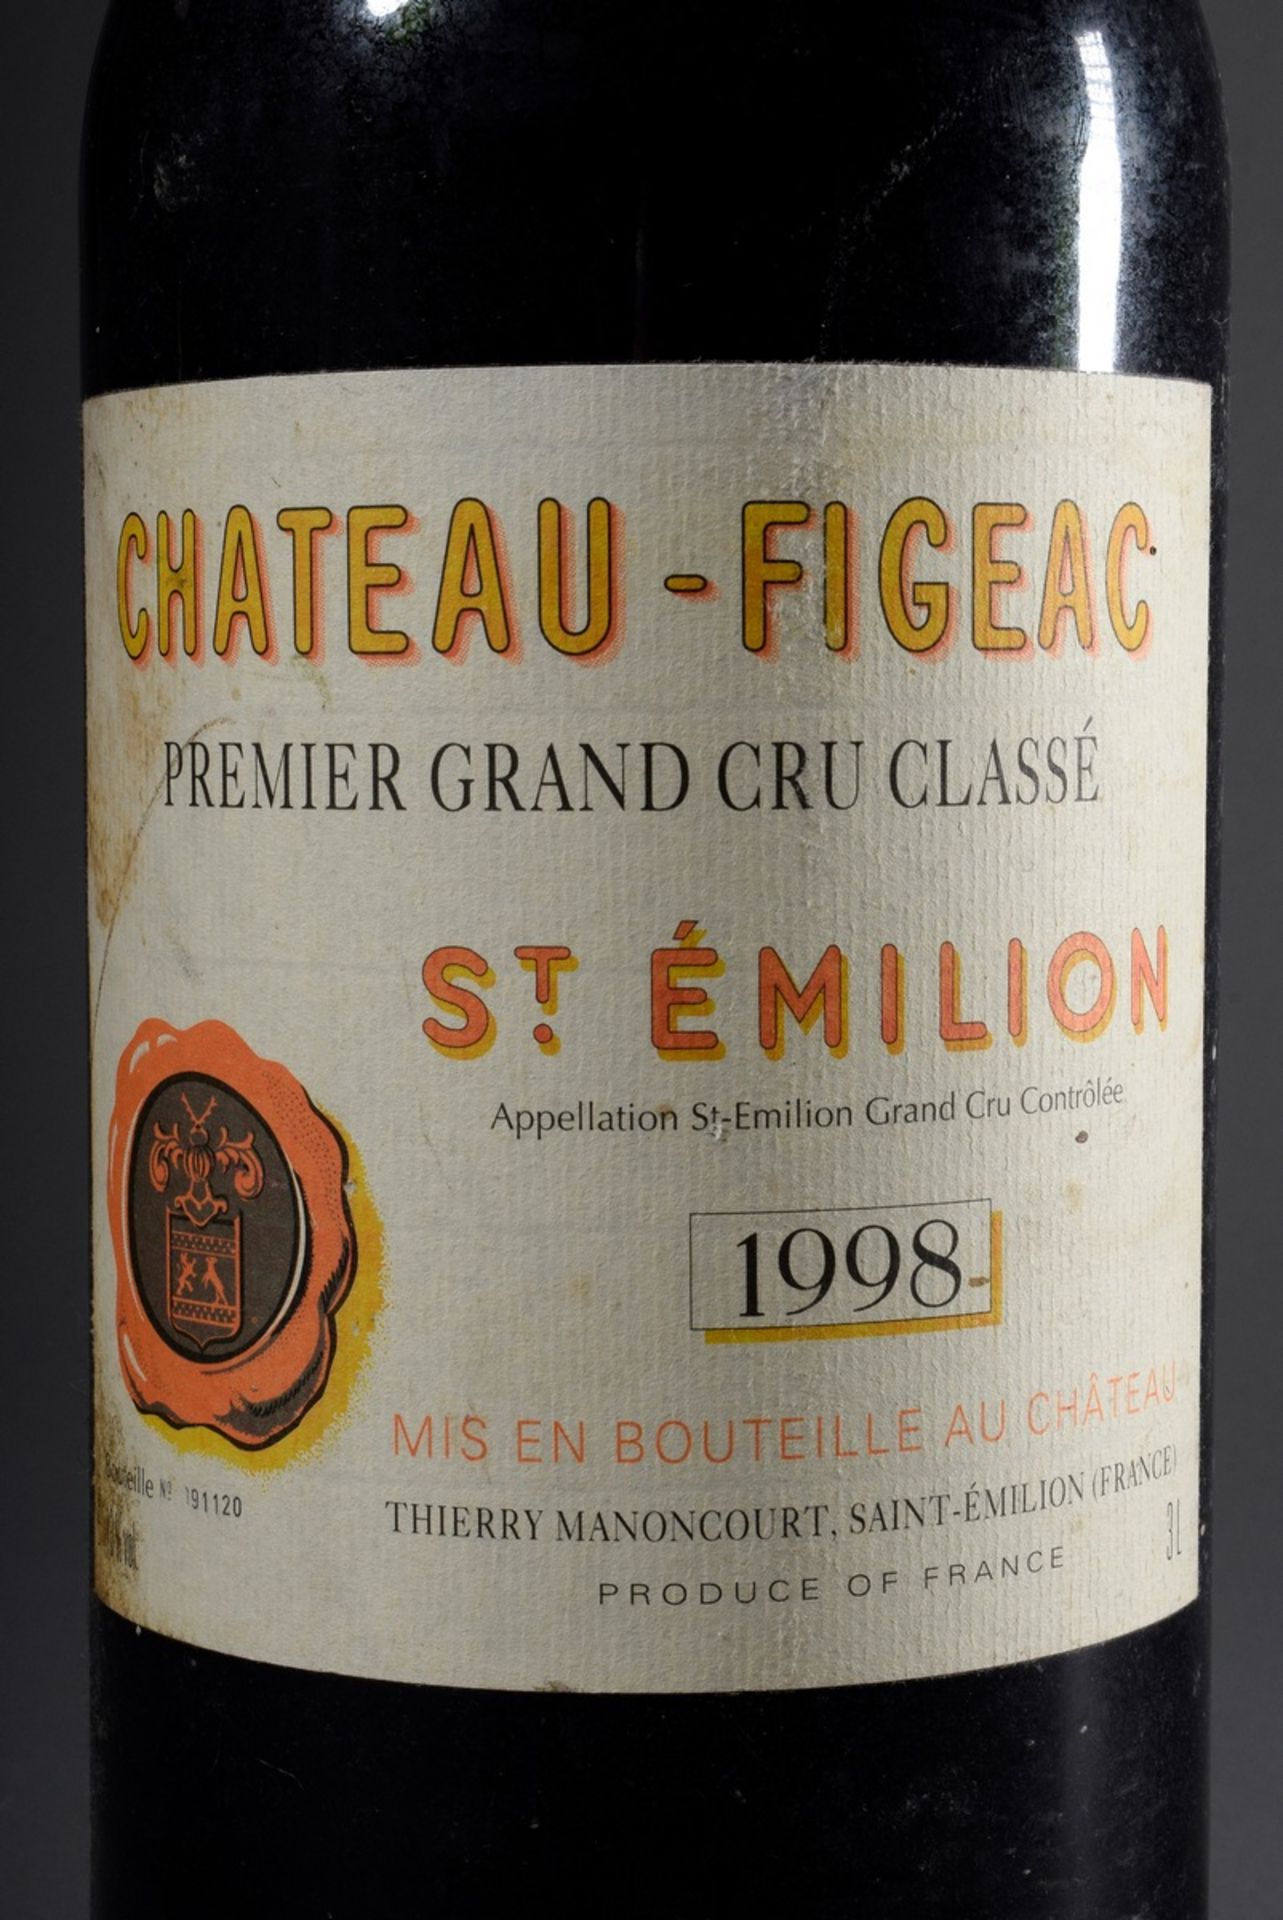 Magnum Flasche 1998 "Chateau-Figeac", St. Emilion, Premier Grand Cru Classe, Bo - Bild 2 aus 4